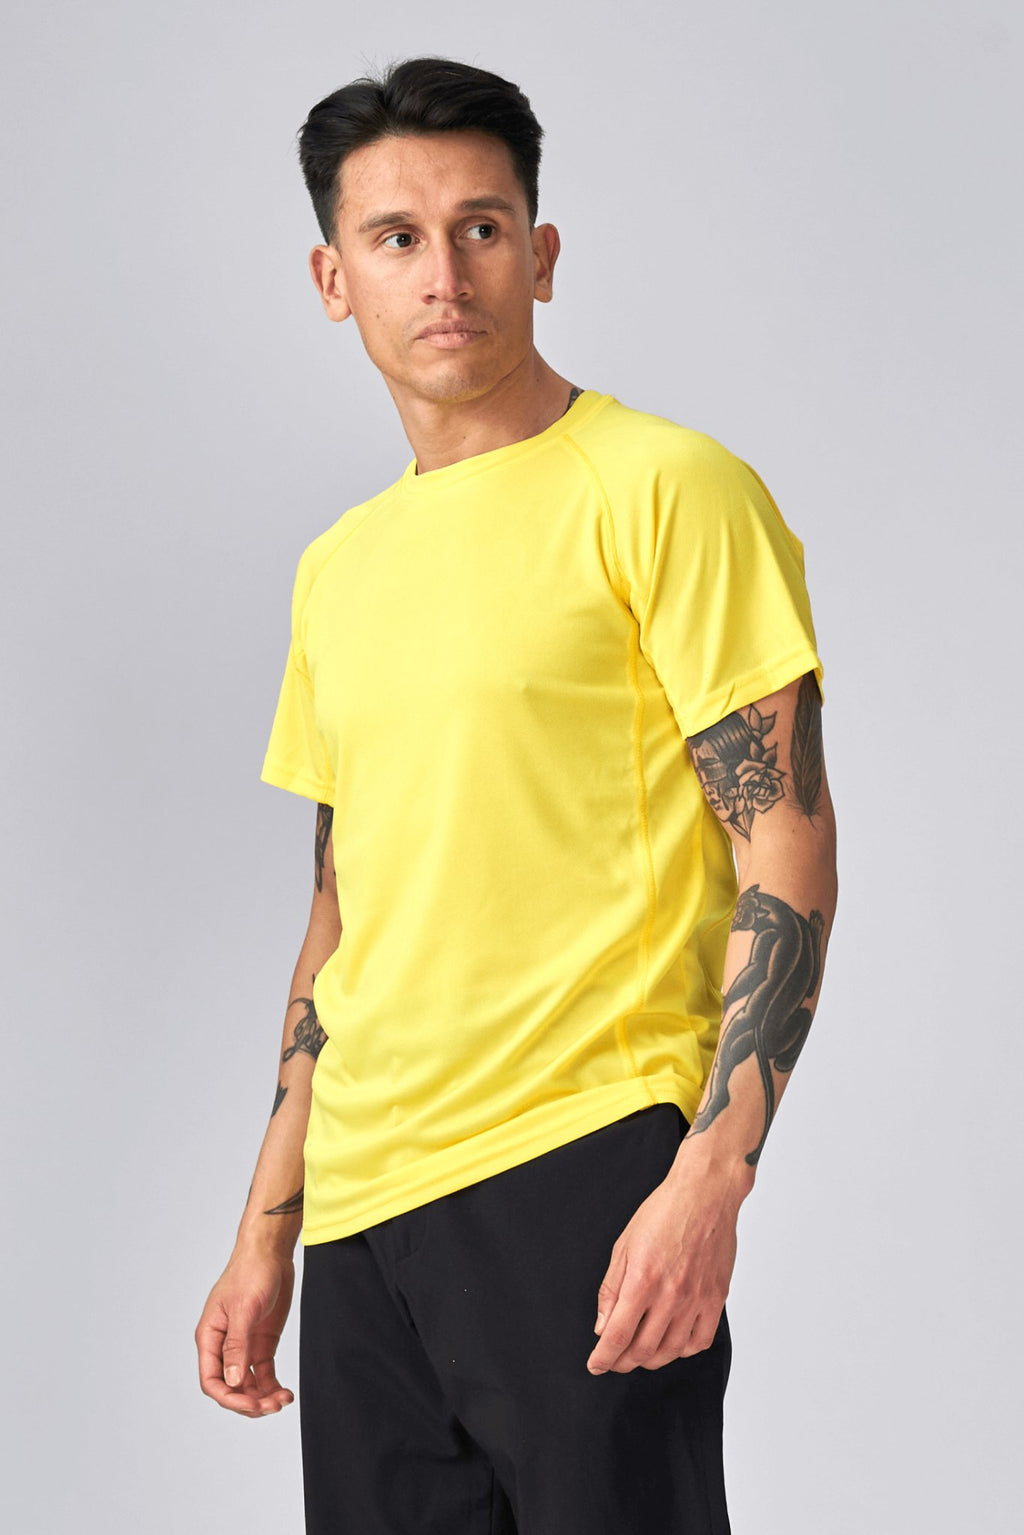 Treniruotės marškinėliai - geltoni